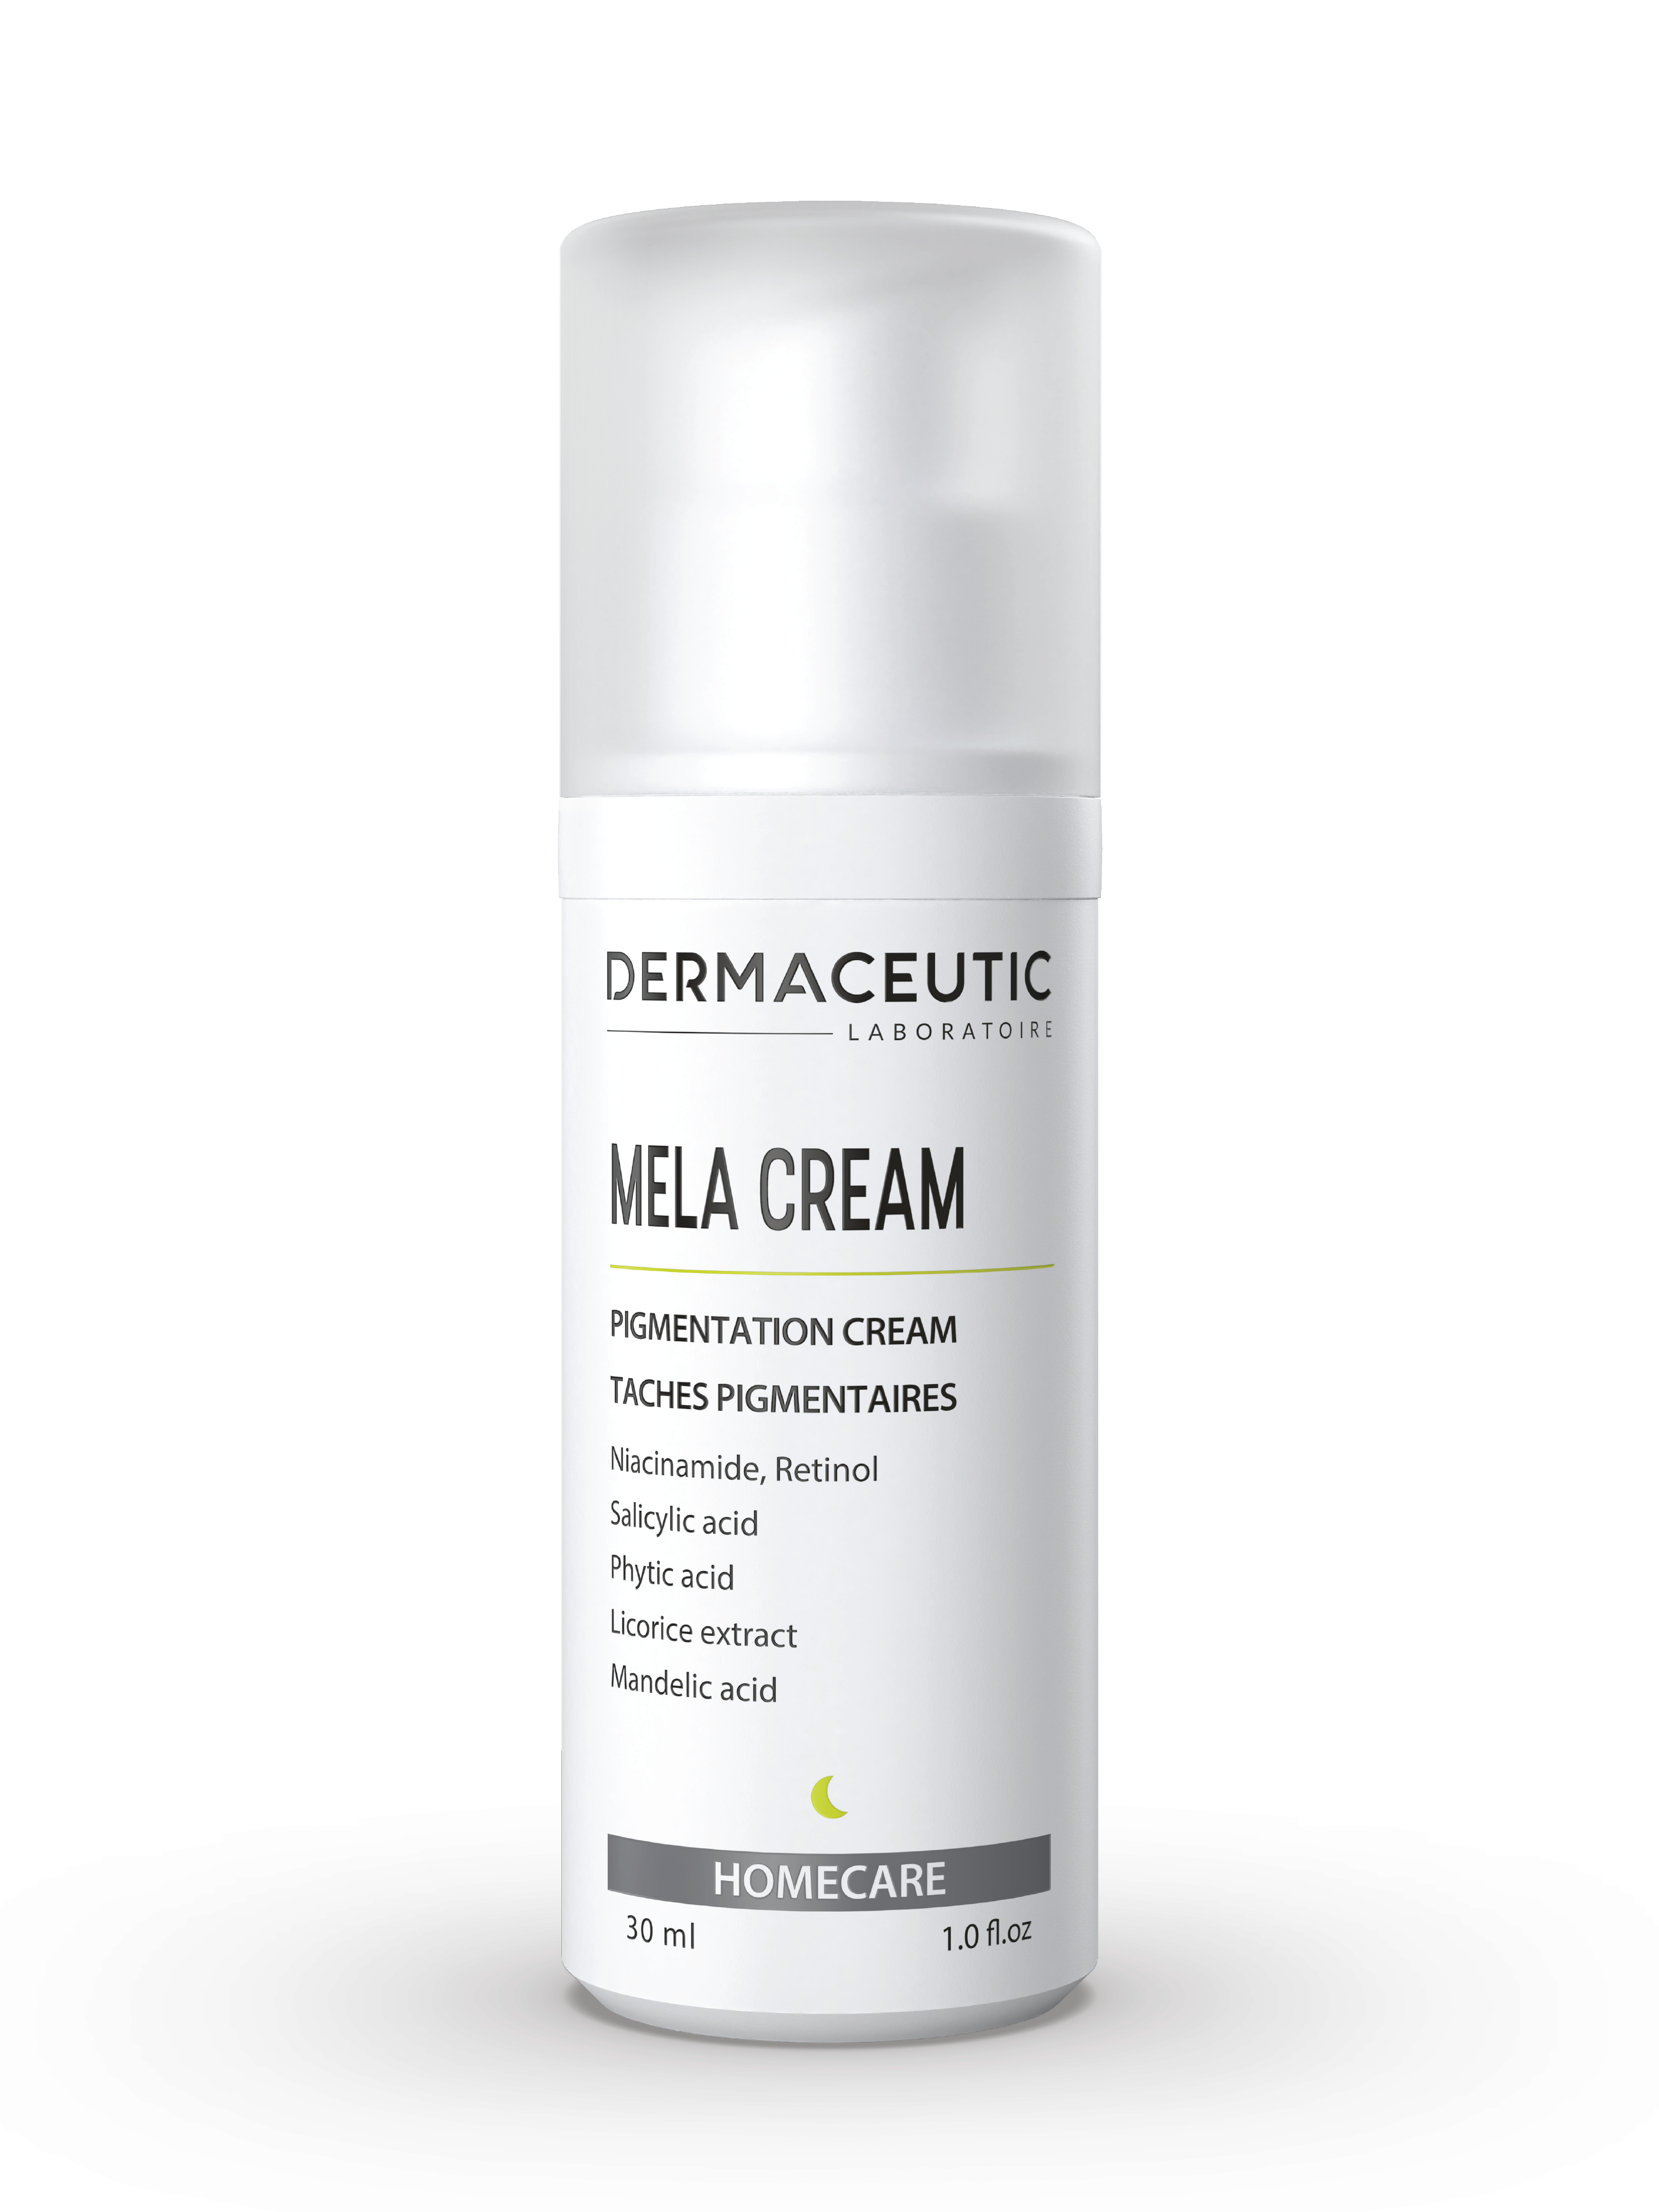 Dermaceutic Mela Cream Pigmentation Cream, 30 ml